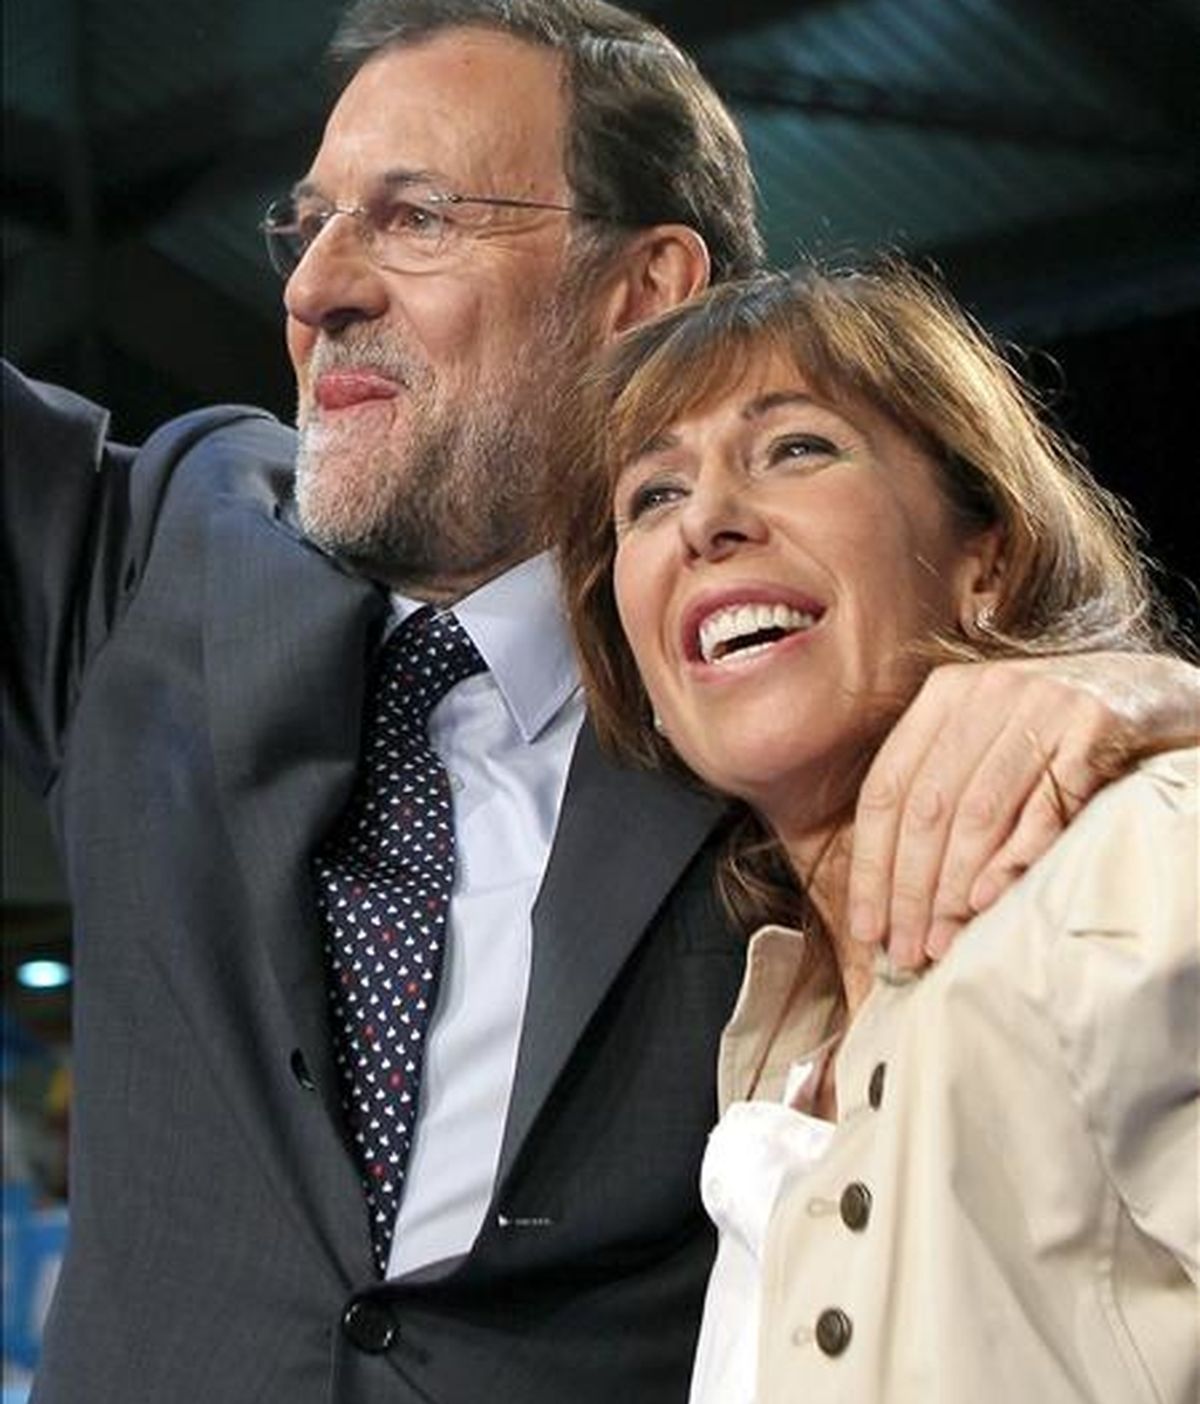 El presidente del Partido Popular, Mariano Rajoy, acompañado de su homóloga en Cataluña ( PPC ) y candidata a la presidencia de la Generalitat, Alicia Sánchez-Camacho, durante el mitin central de campaña celebrado esta noche en Hospitalet de Llobregat (Barcelona). EFE